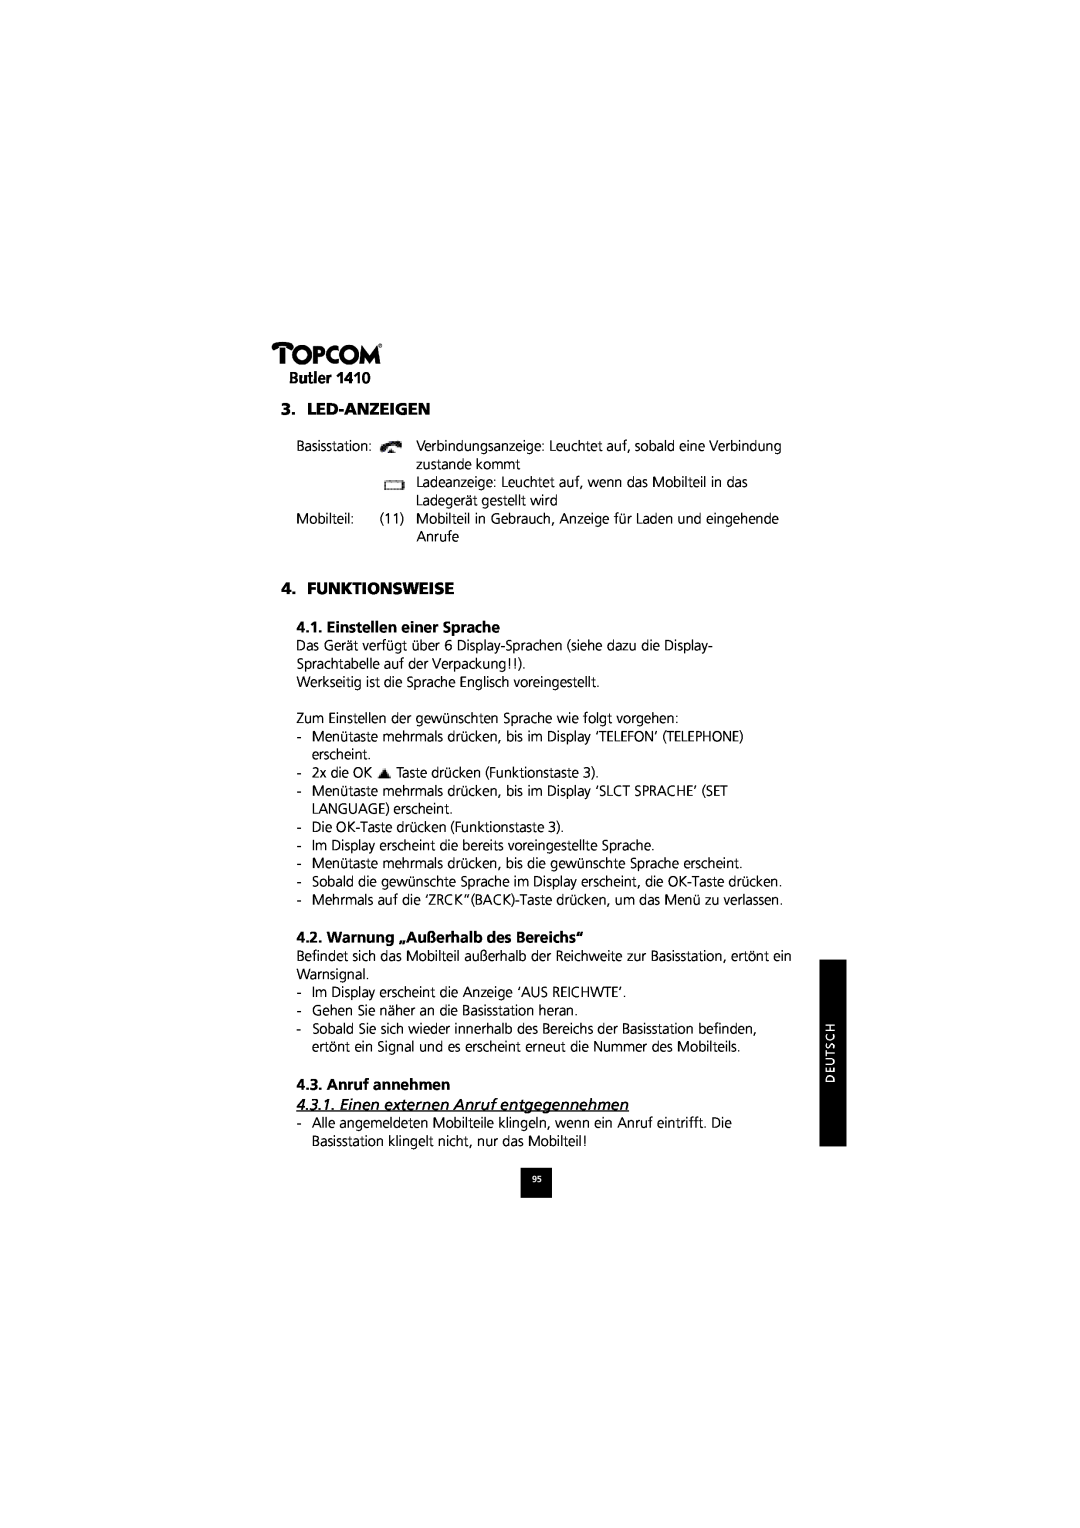 Topcom 1410 manual Butler 3. LED-ANZEIGEN, Funktionsweise, Einstellen einer Sprache, Warnung „Außerhalb des Bereichs“ 